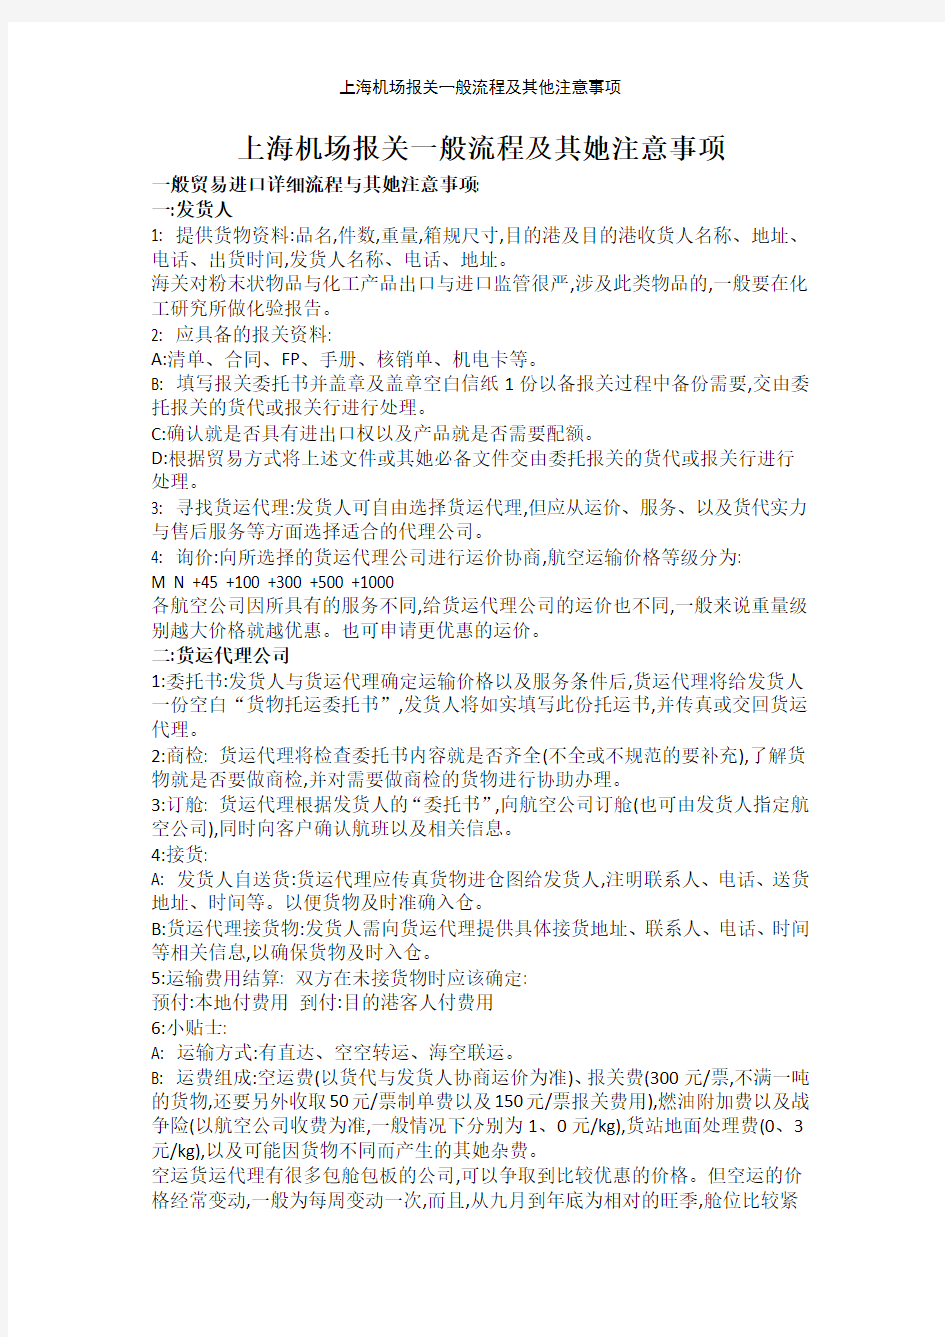 上海机场报关一般流程及其他注意事项